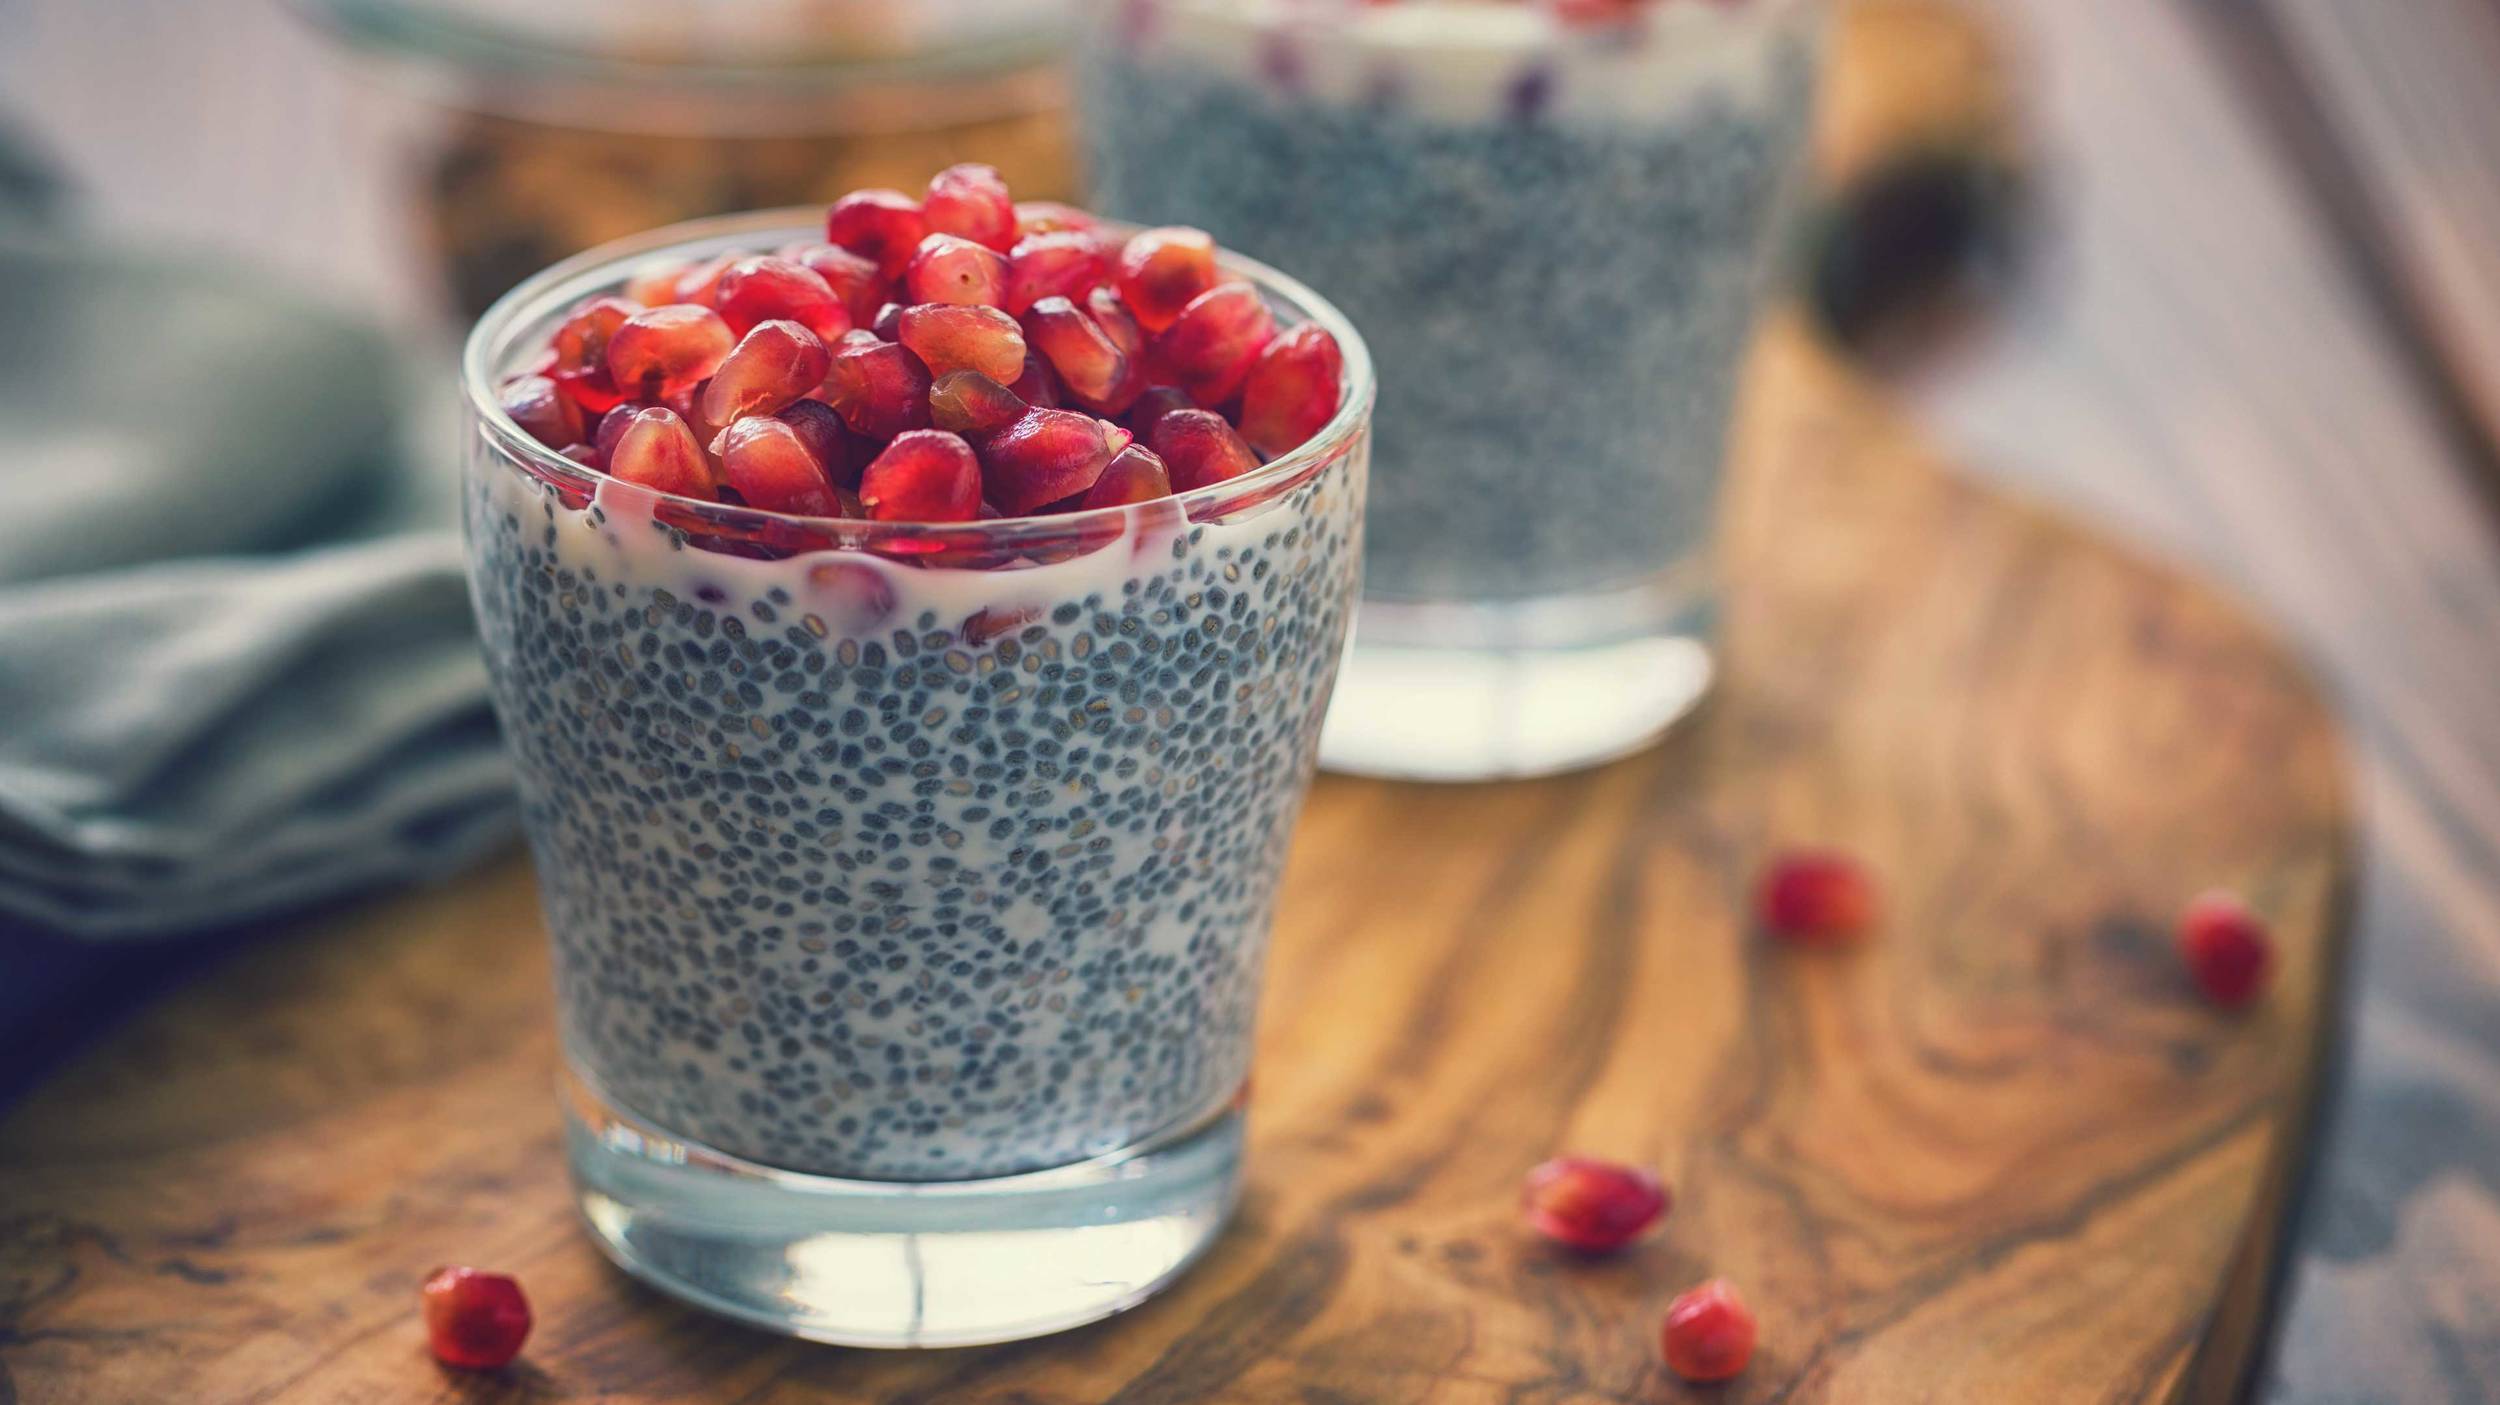 Las semillas de chía se pueden agregar crudas a los cereales, yogur, ensaladas, sopas, budines (postres cremosos), jugos y batidos.